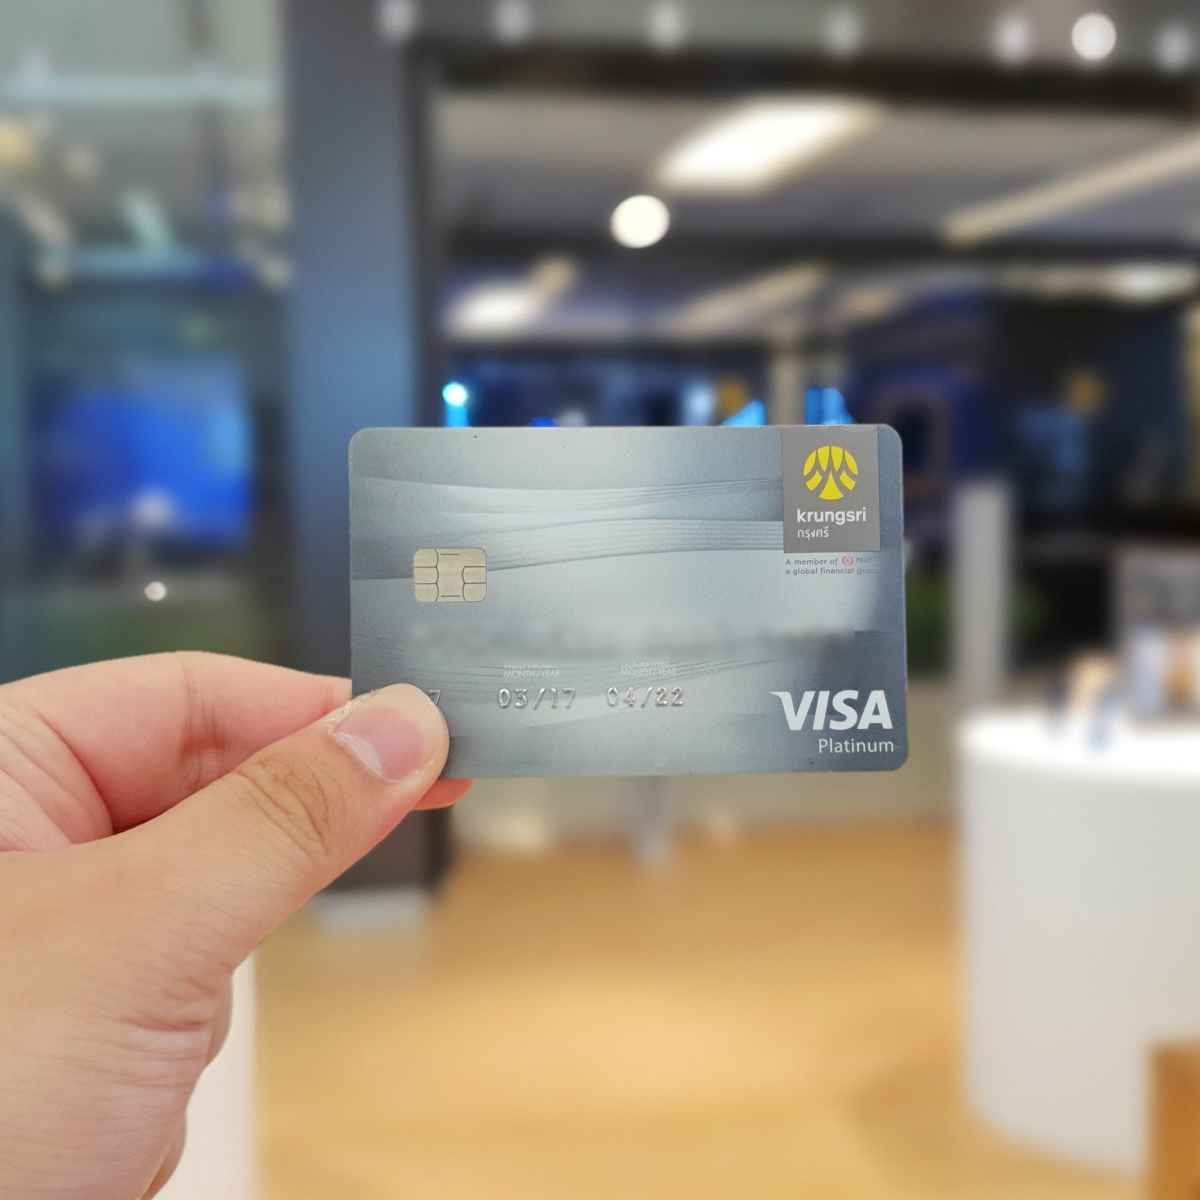 Krungsri Credit Card